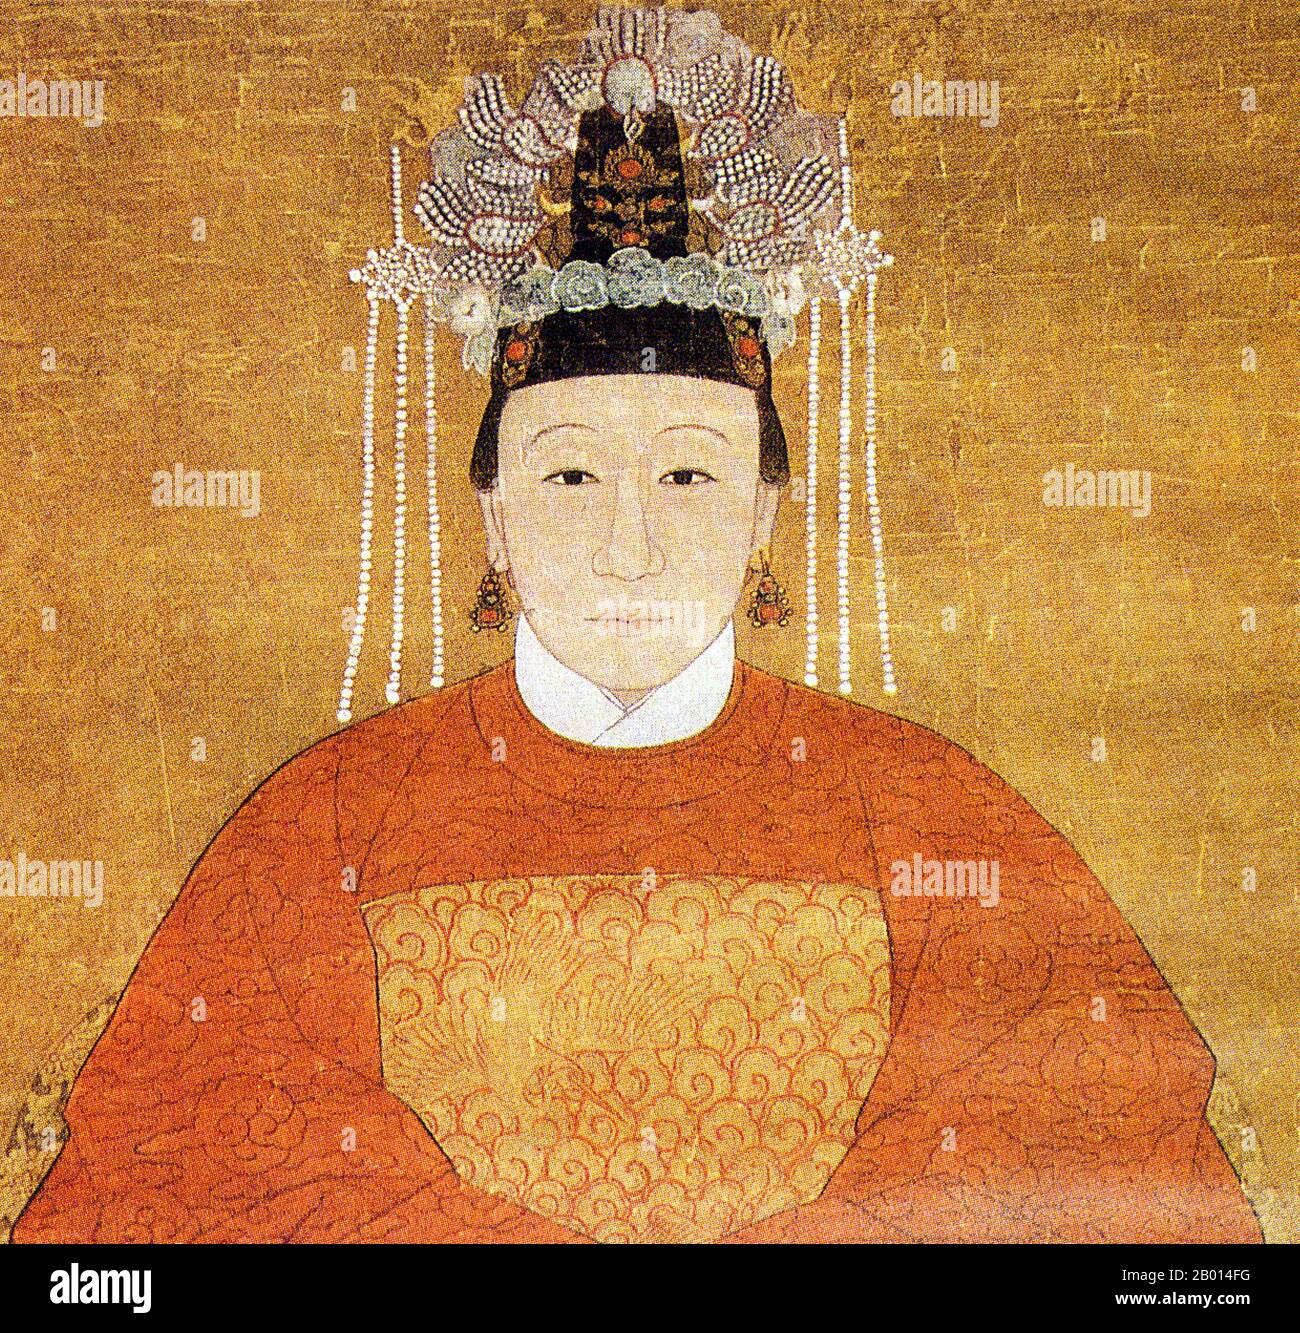 Cina: Madame Zhu, una donna cinese di rango, indossando abiti ufficiali del 8° rango civile con un uccello oriole. Dinastia Ming (1368-1644) ritratto. Foto Stock